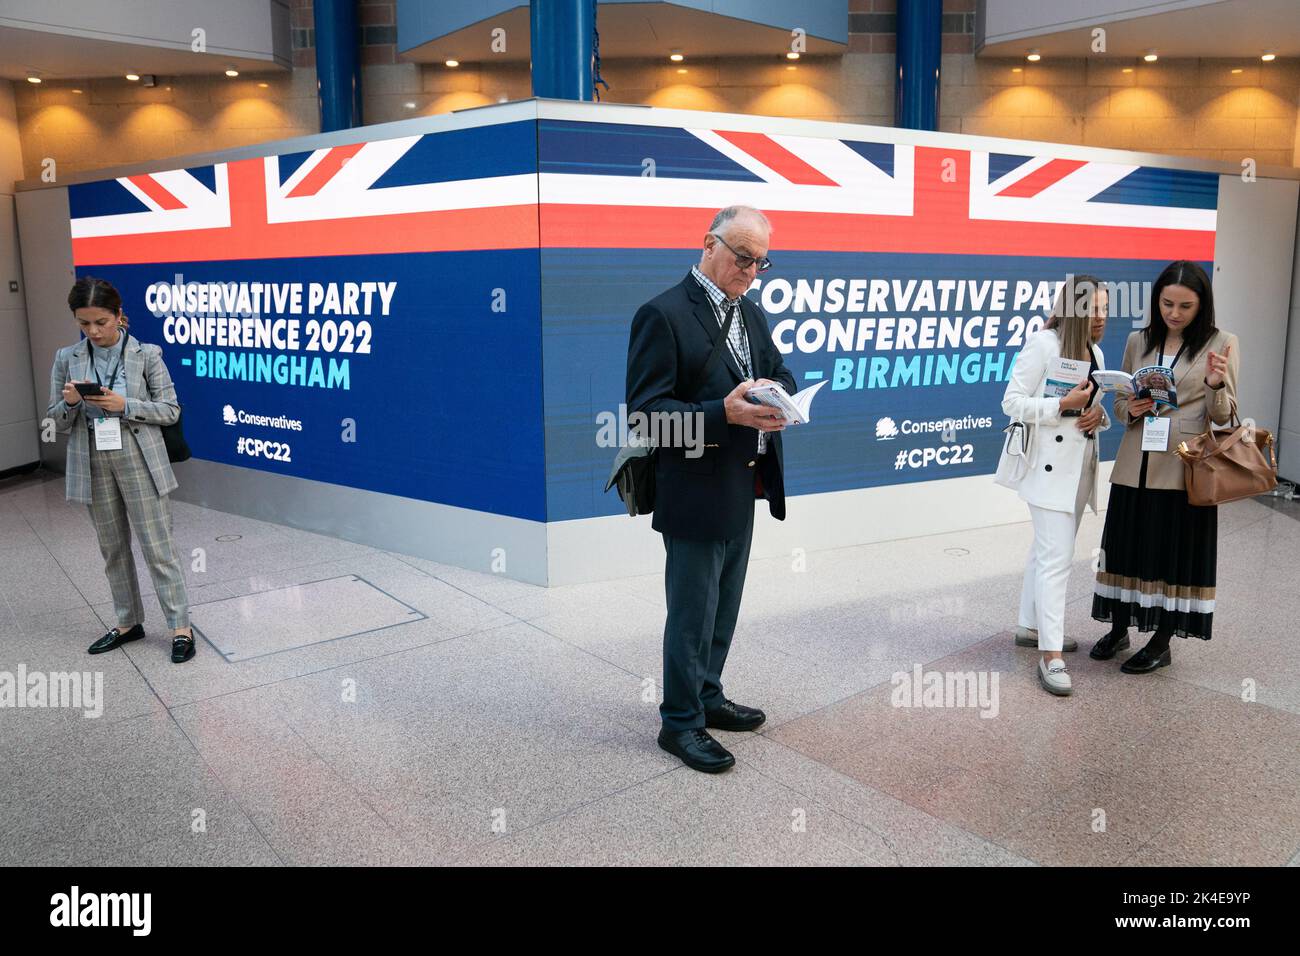 Persone che partecipano alla conferenza annuale del Partito conservatore presso l'International Convention Centre di Birmingham. Data immagine: Domenica 2 ottobre 2022. Foto Stock